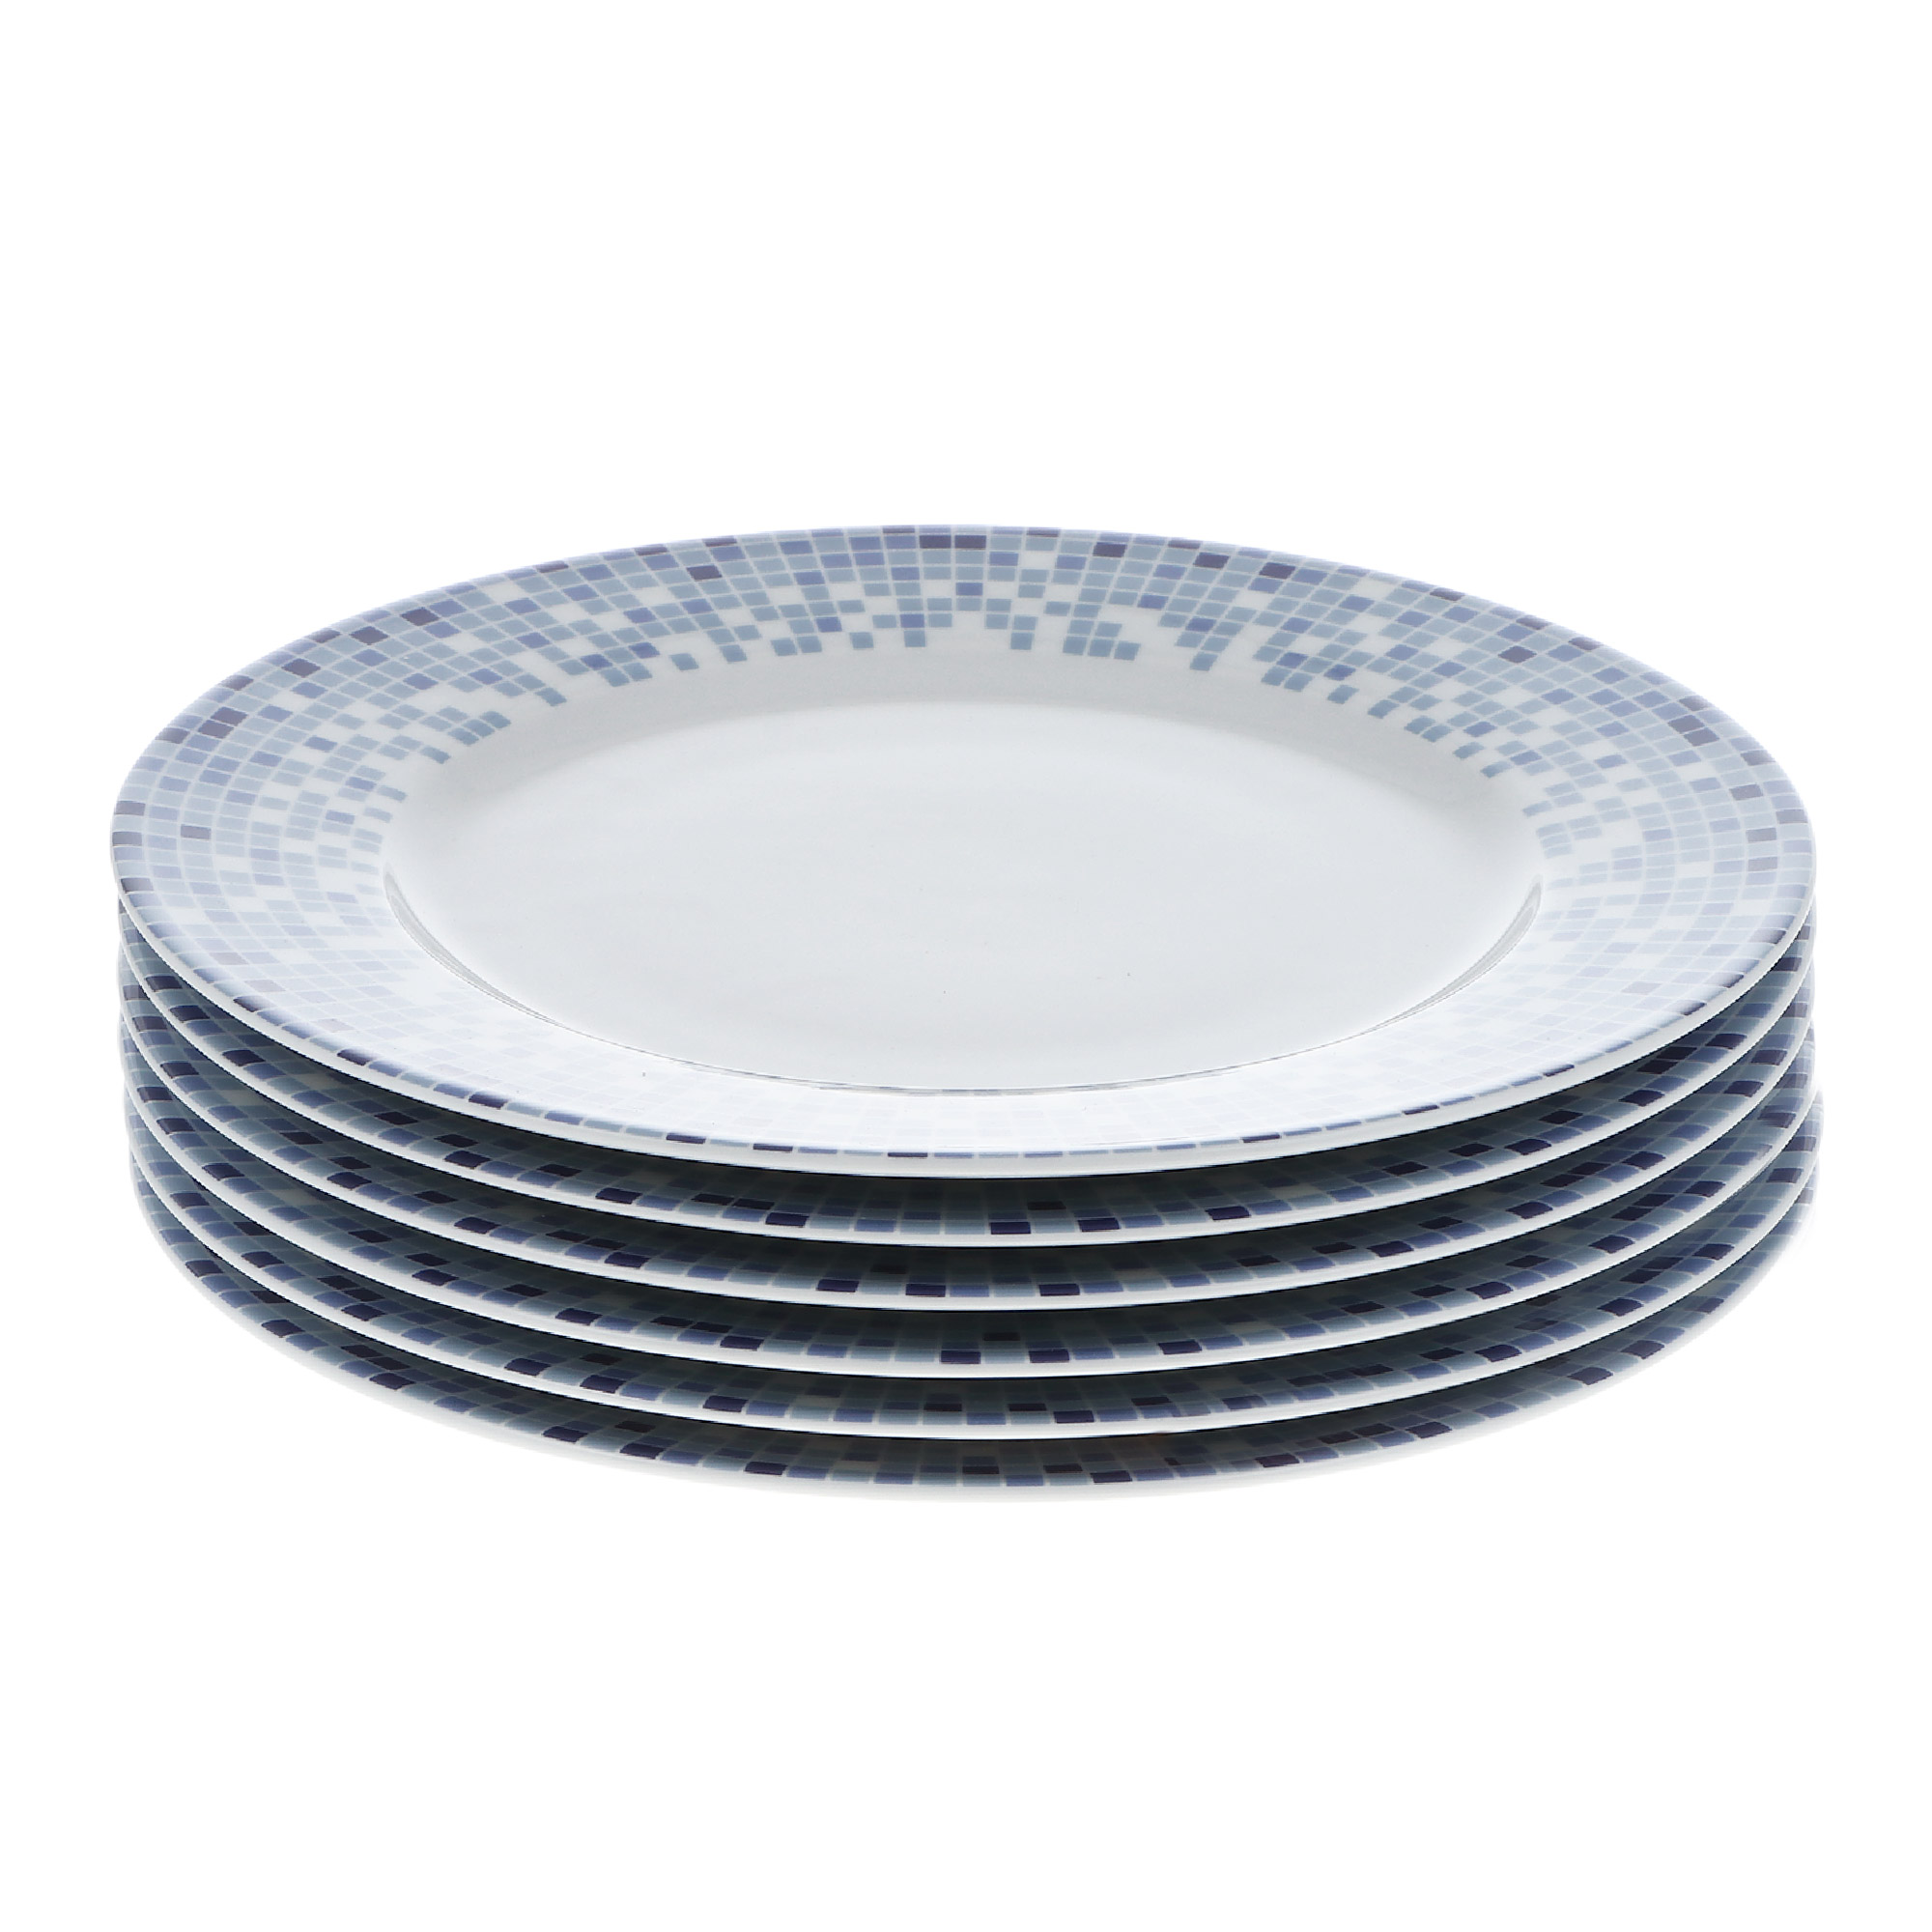 Набор тарелок 21 см Thun1794 декор мозаика набор тарелок для супа coup soup 19см thun1794 опал декор широкий кант платина золото